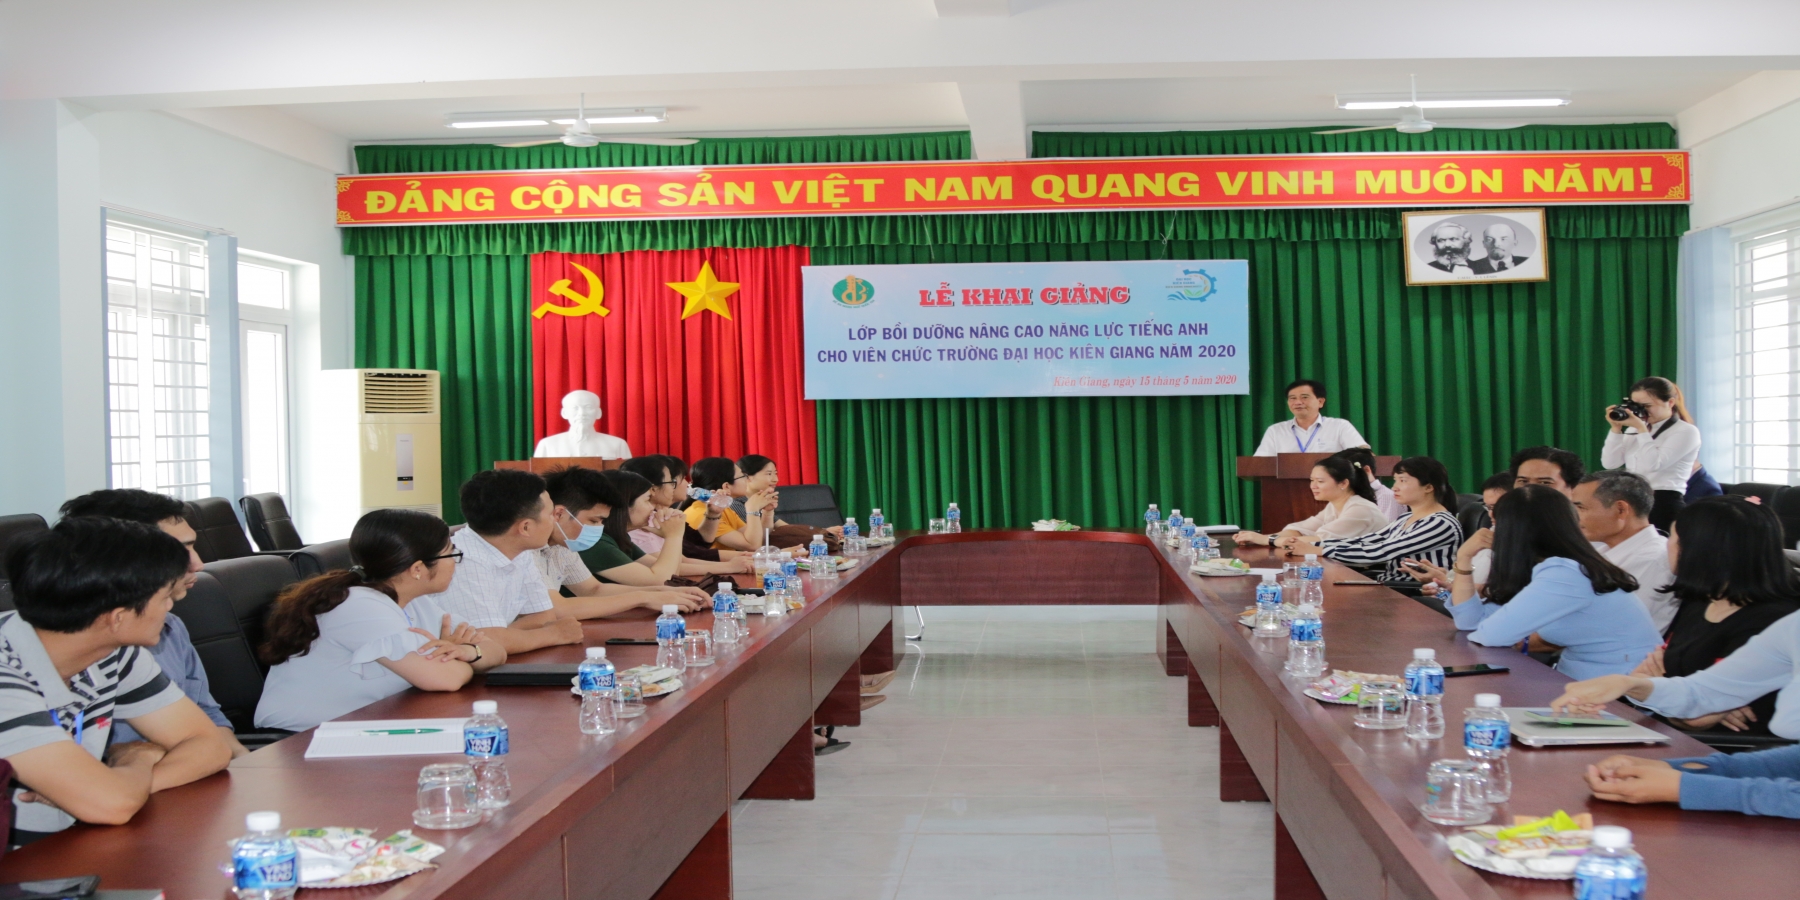 Khai giảng lớp bồi dưỡng nâng cao năng lực ngoại ngữ cho viên chức Trường Đại học Kiên Giang